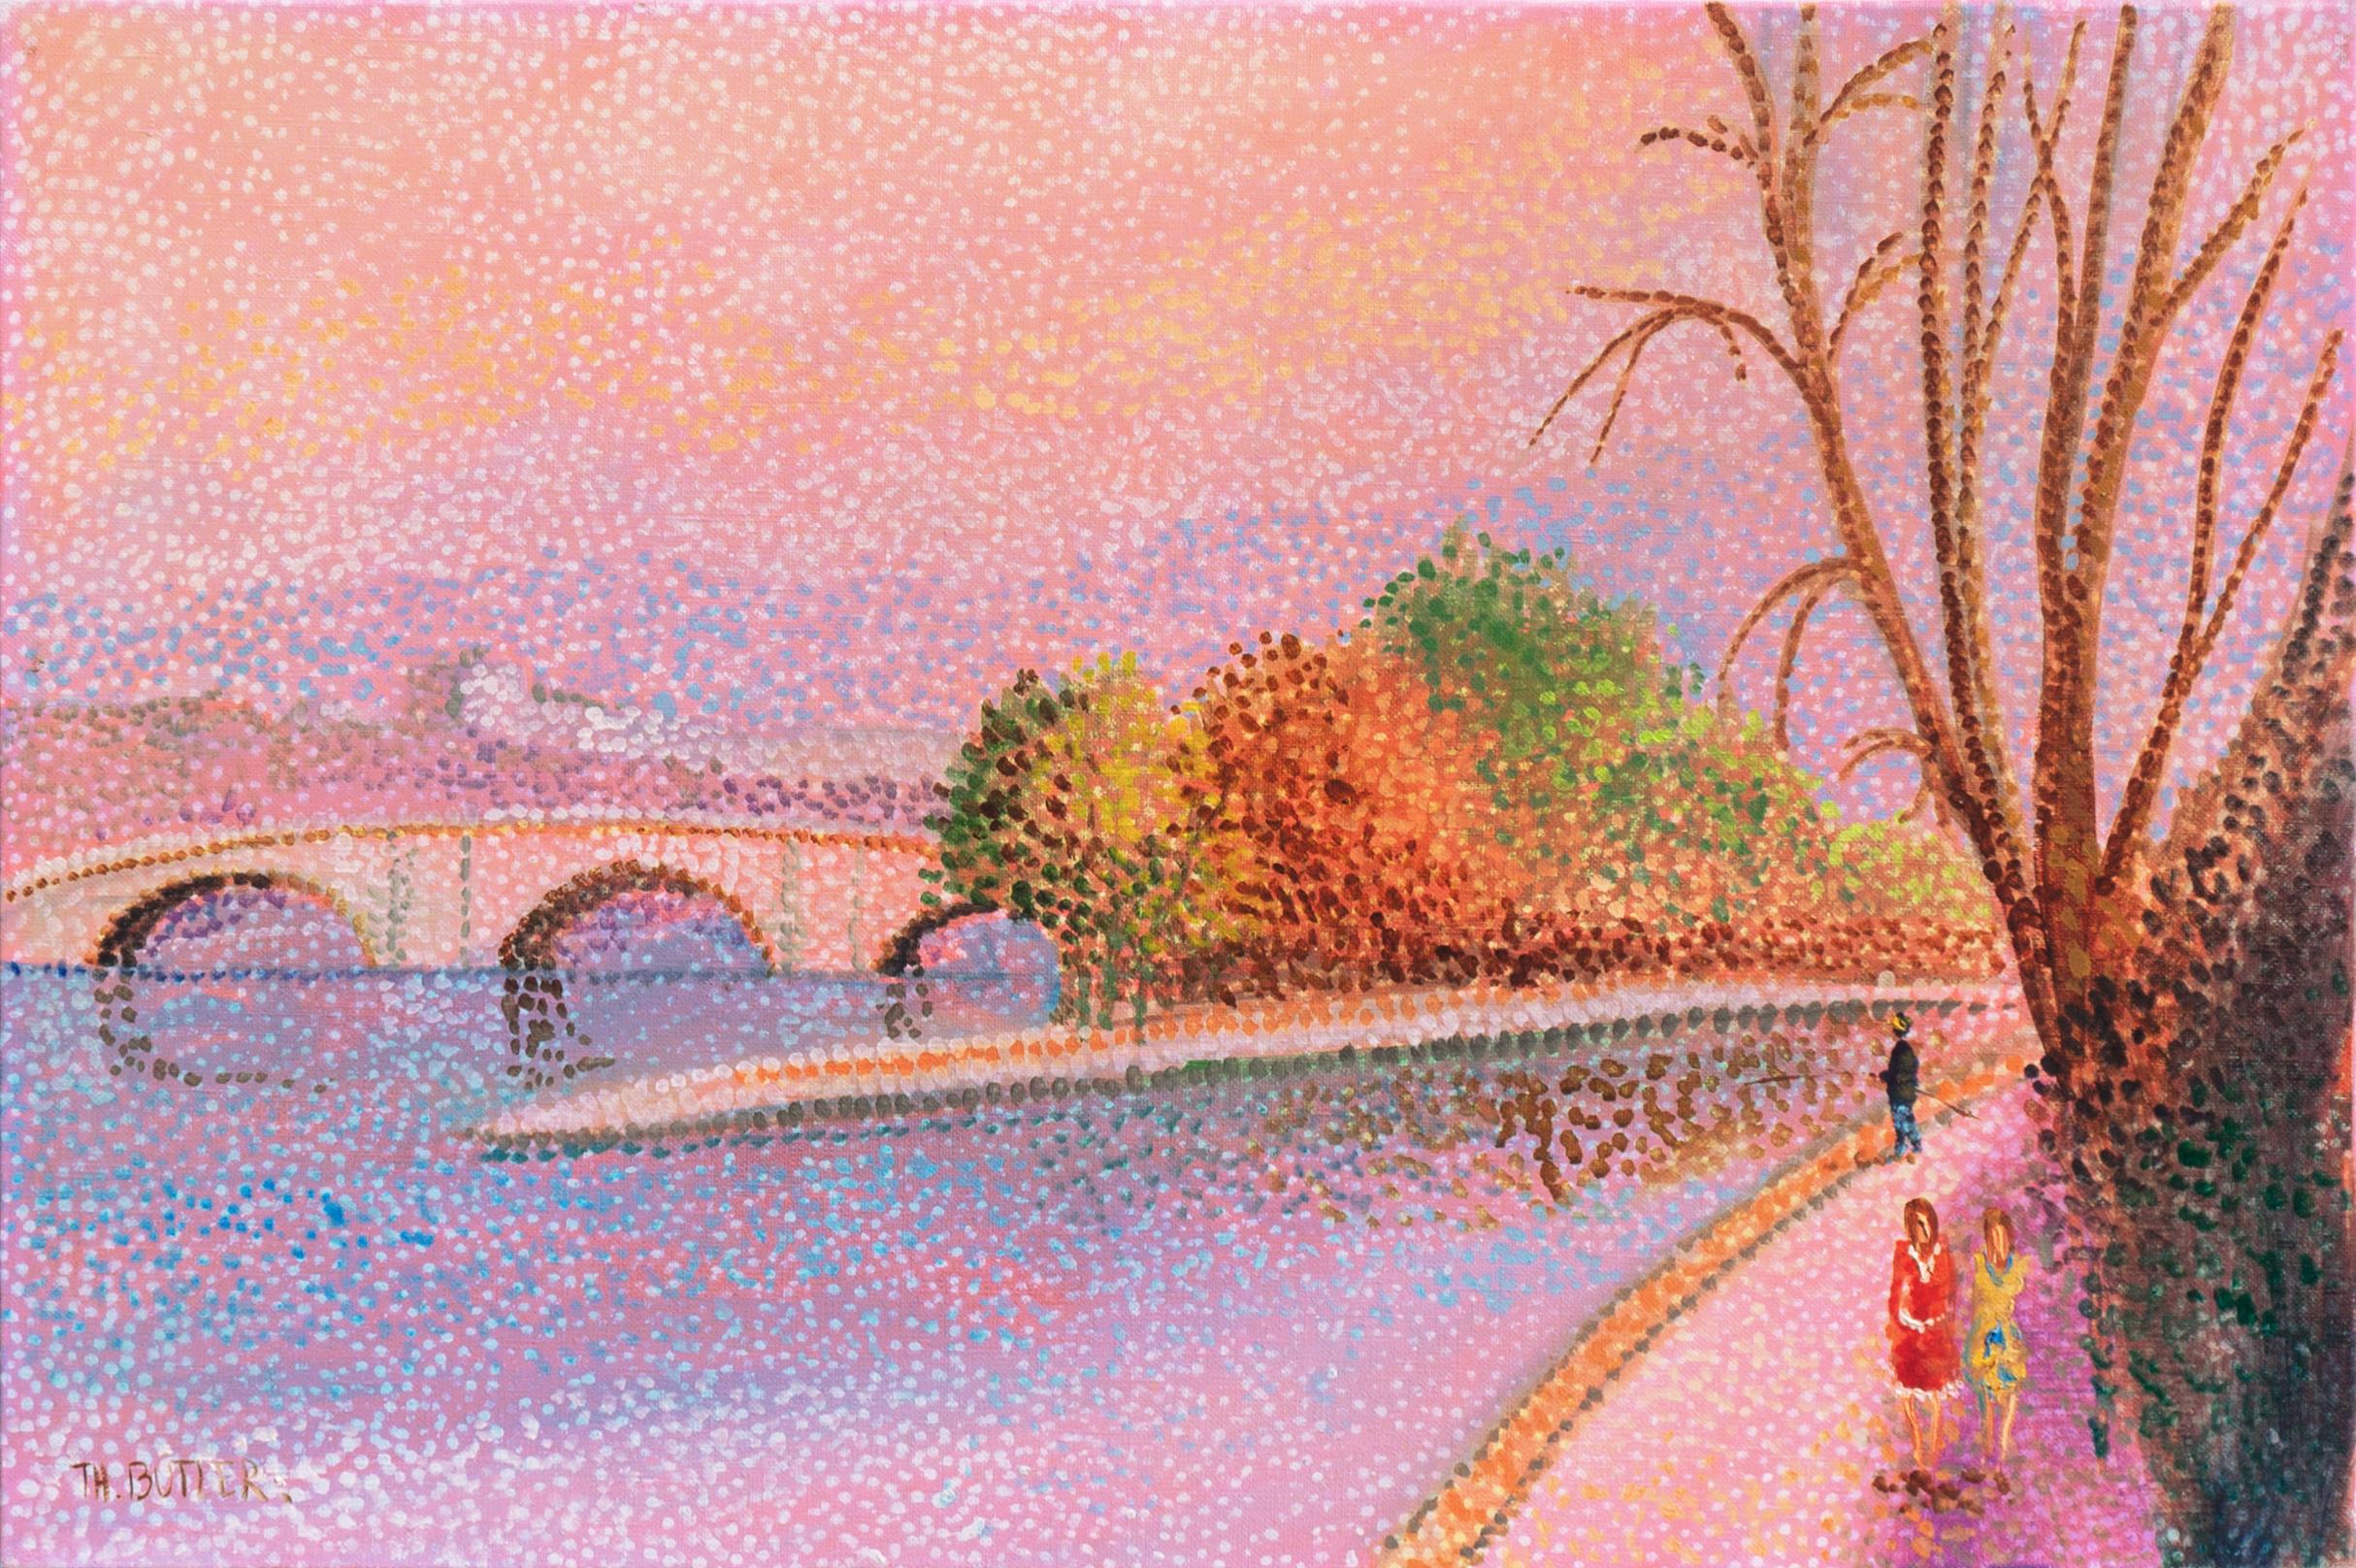 Th. Butler Landscape Painting - 'Autumn in Paris', the Seine and the Pont Neuf, Île de la Cité, Pointillist Oil